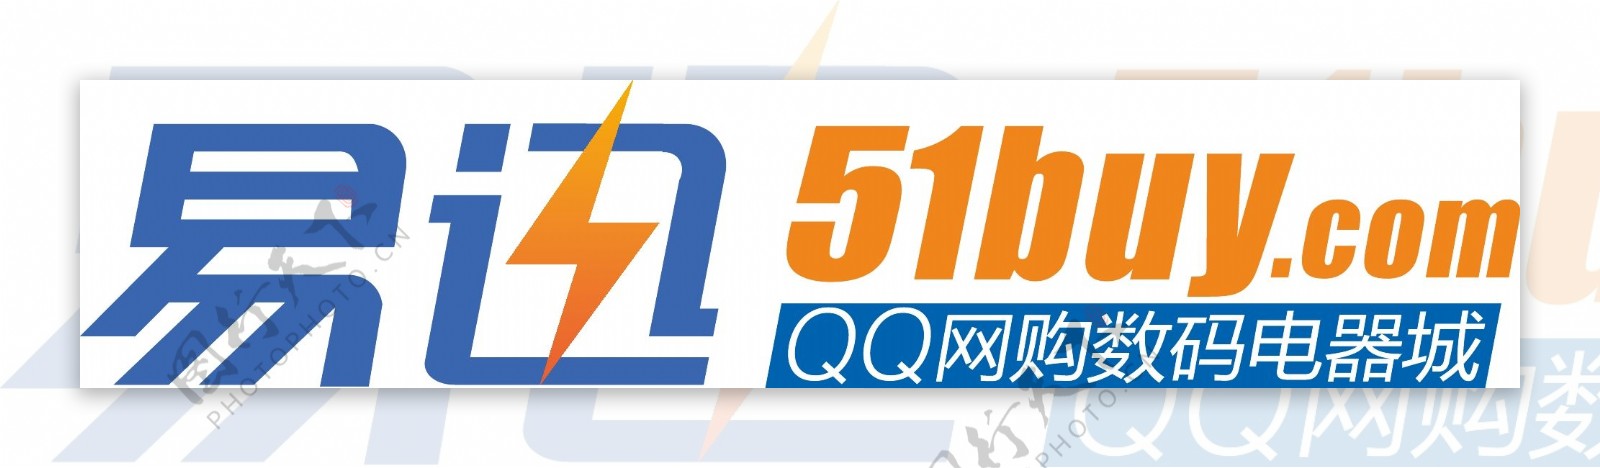 易迅网logo图片